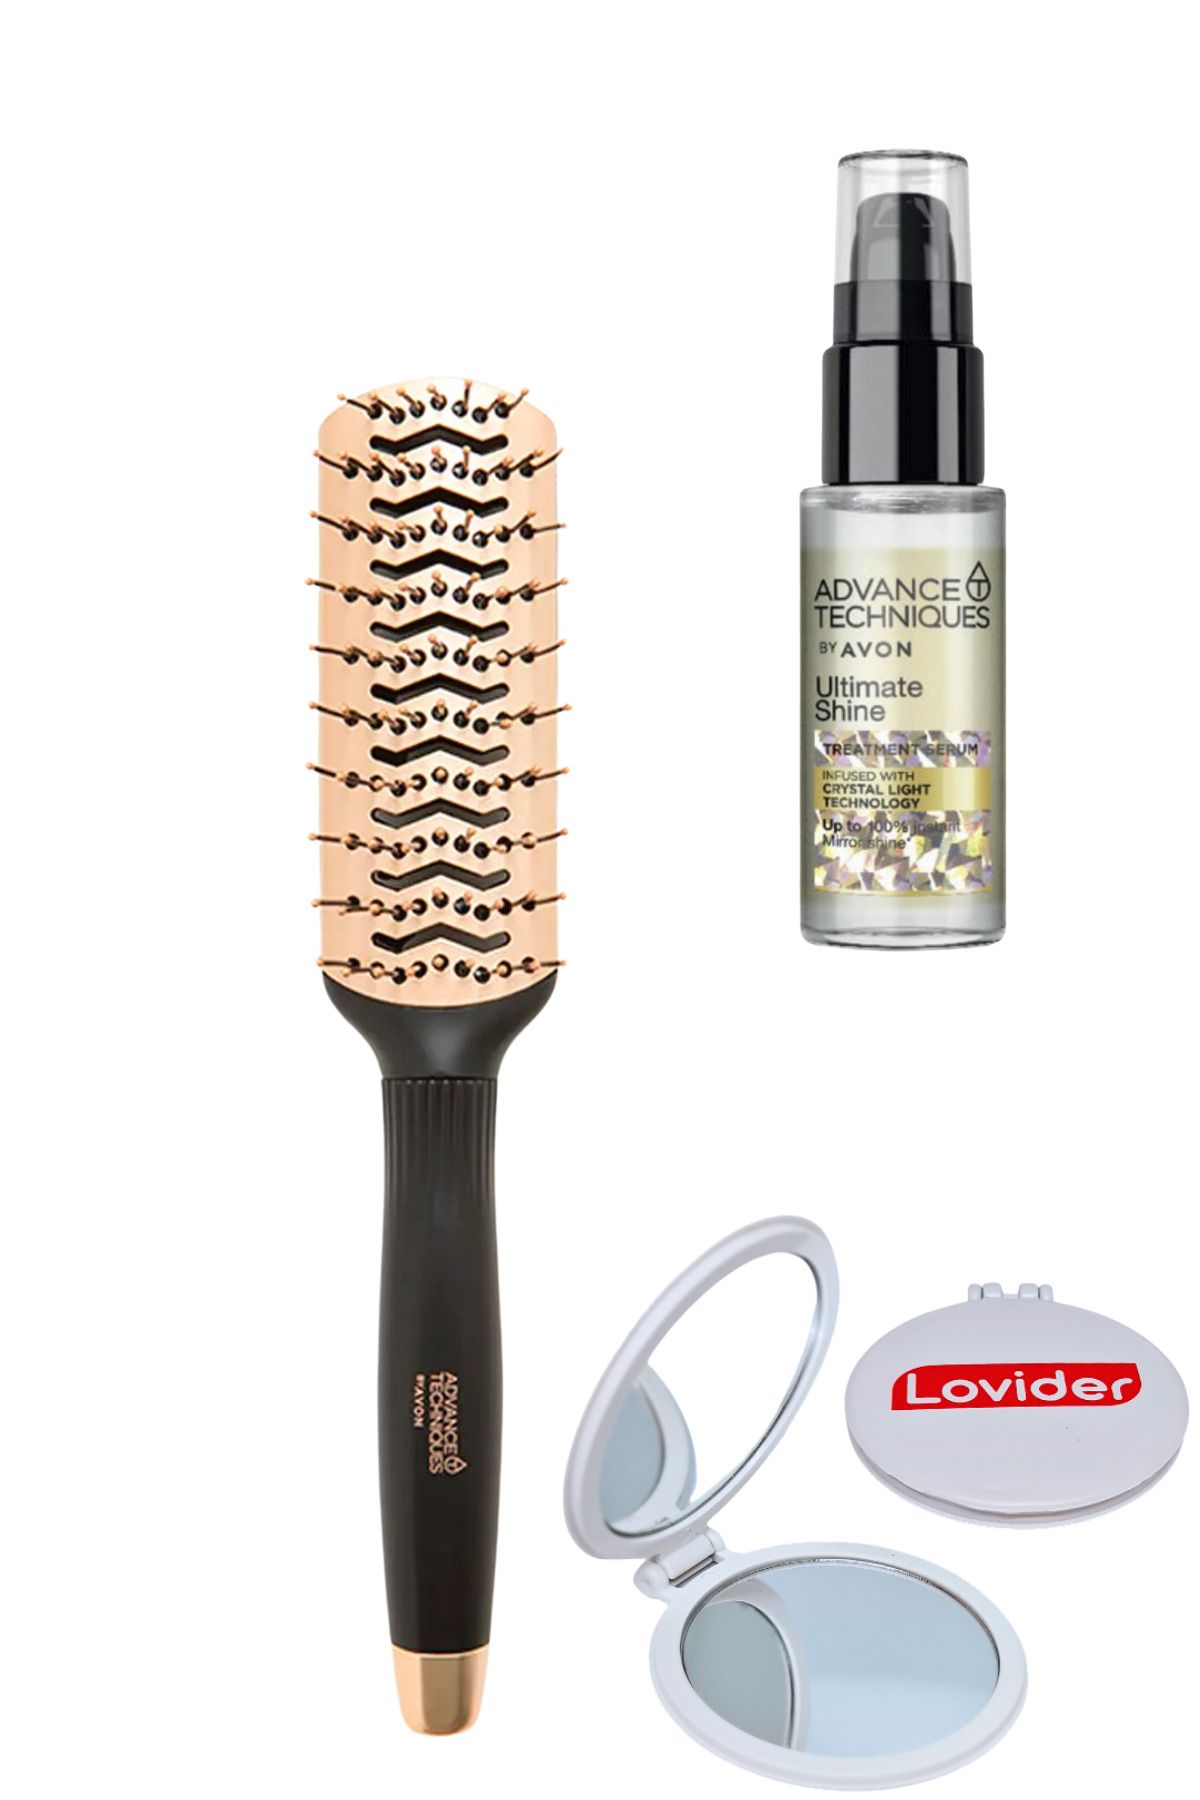 Avon Vent Saç Fırçası + Parlaklık Veren Saç Serumu 30ml + Lovider Cep Aynası